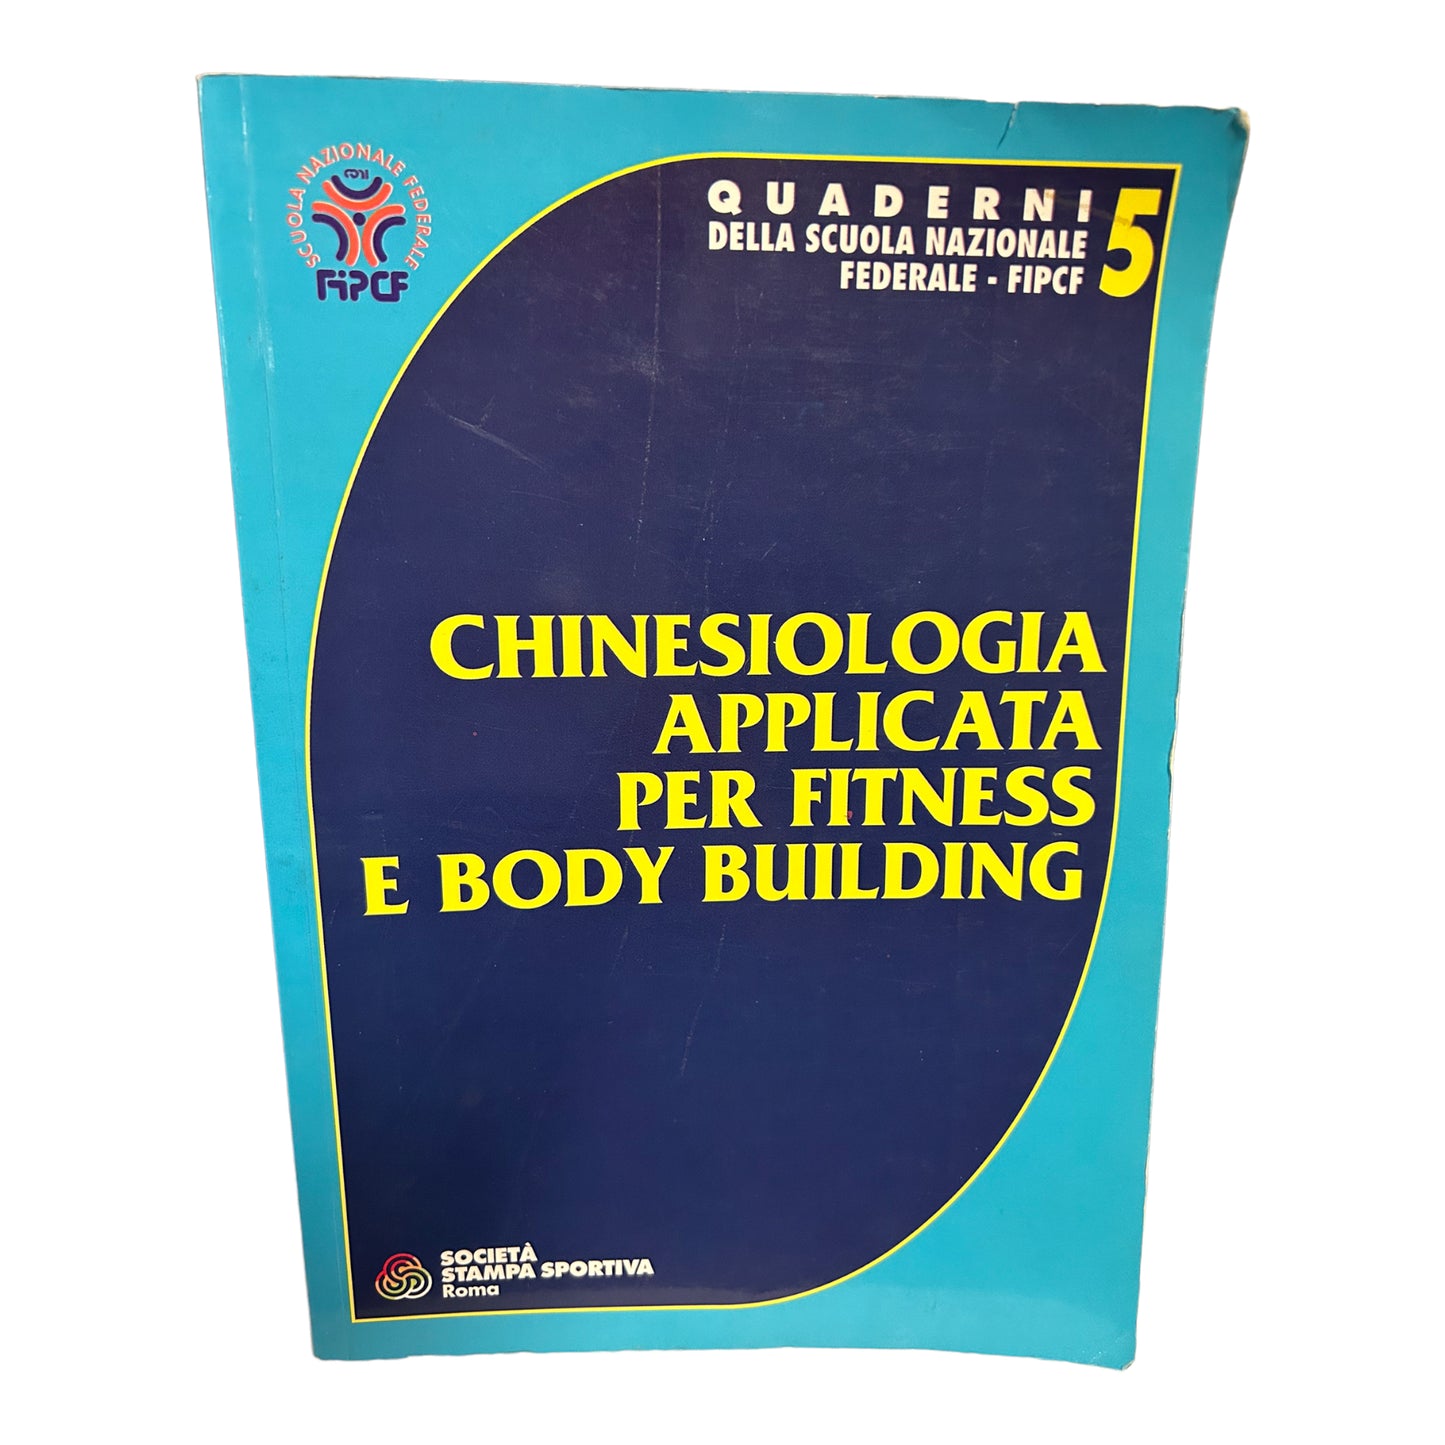 Chinesiologia applicata per fitness e body building